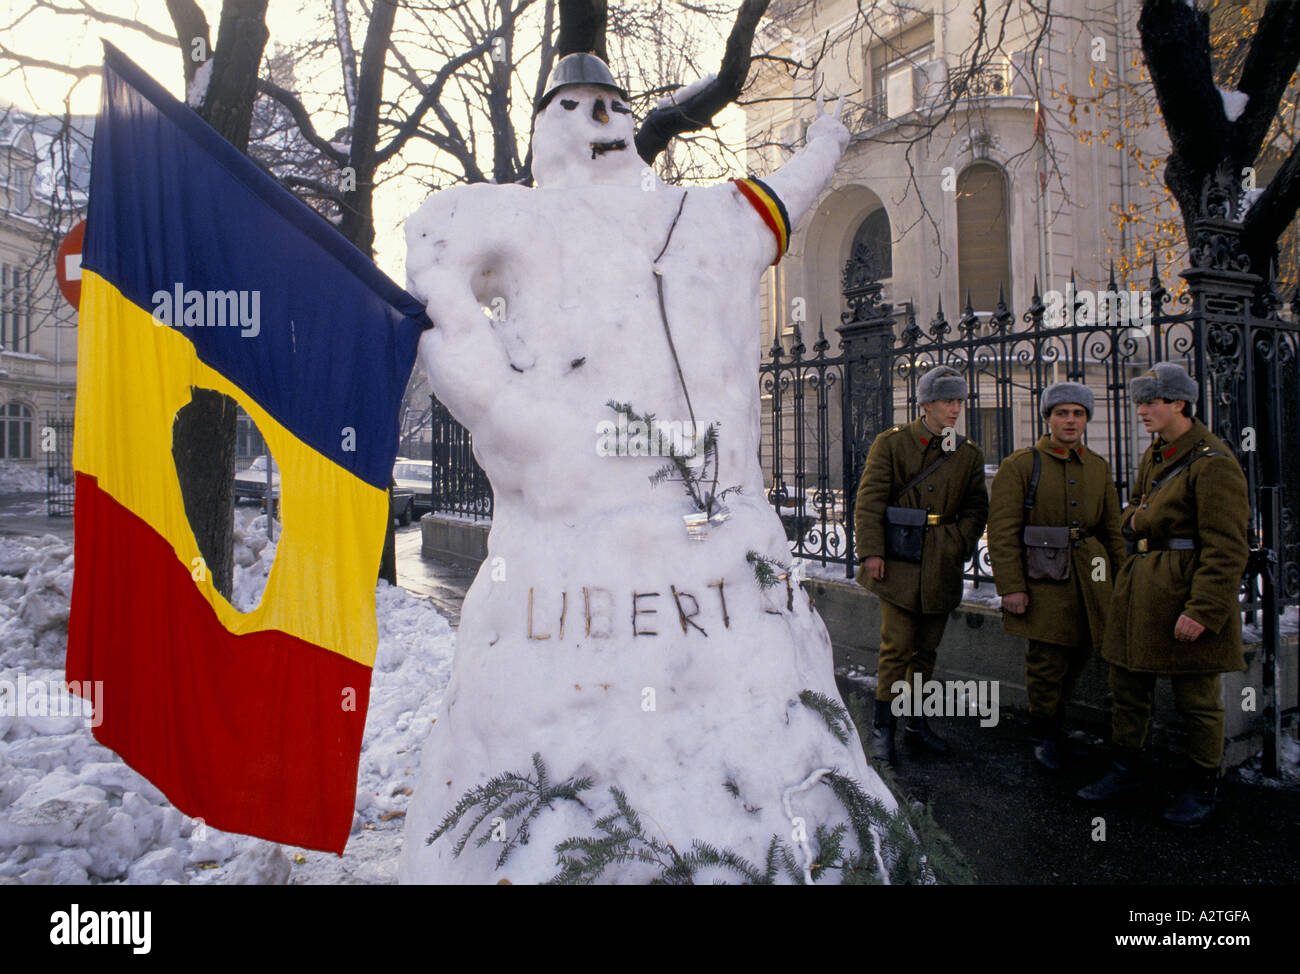 Rumänien nach Bukarest 1990 die Revolution drei Soldaten stehend neben Freiheit Schneemann, die rumänische Flagge mit dem Wappen der kommunistischen Symbol hält Ausschneiden Stockfoto